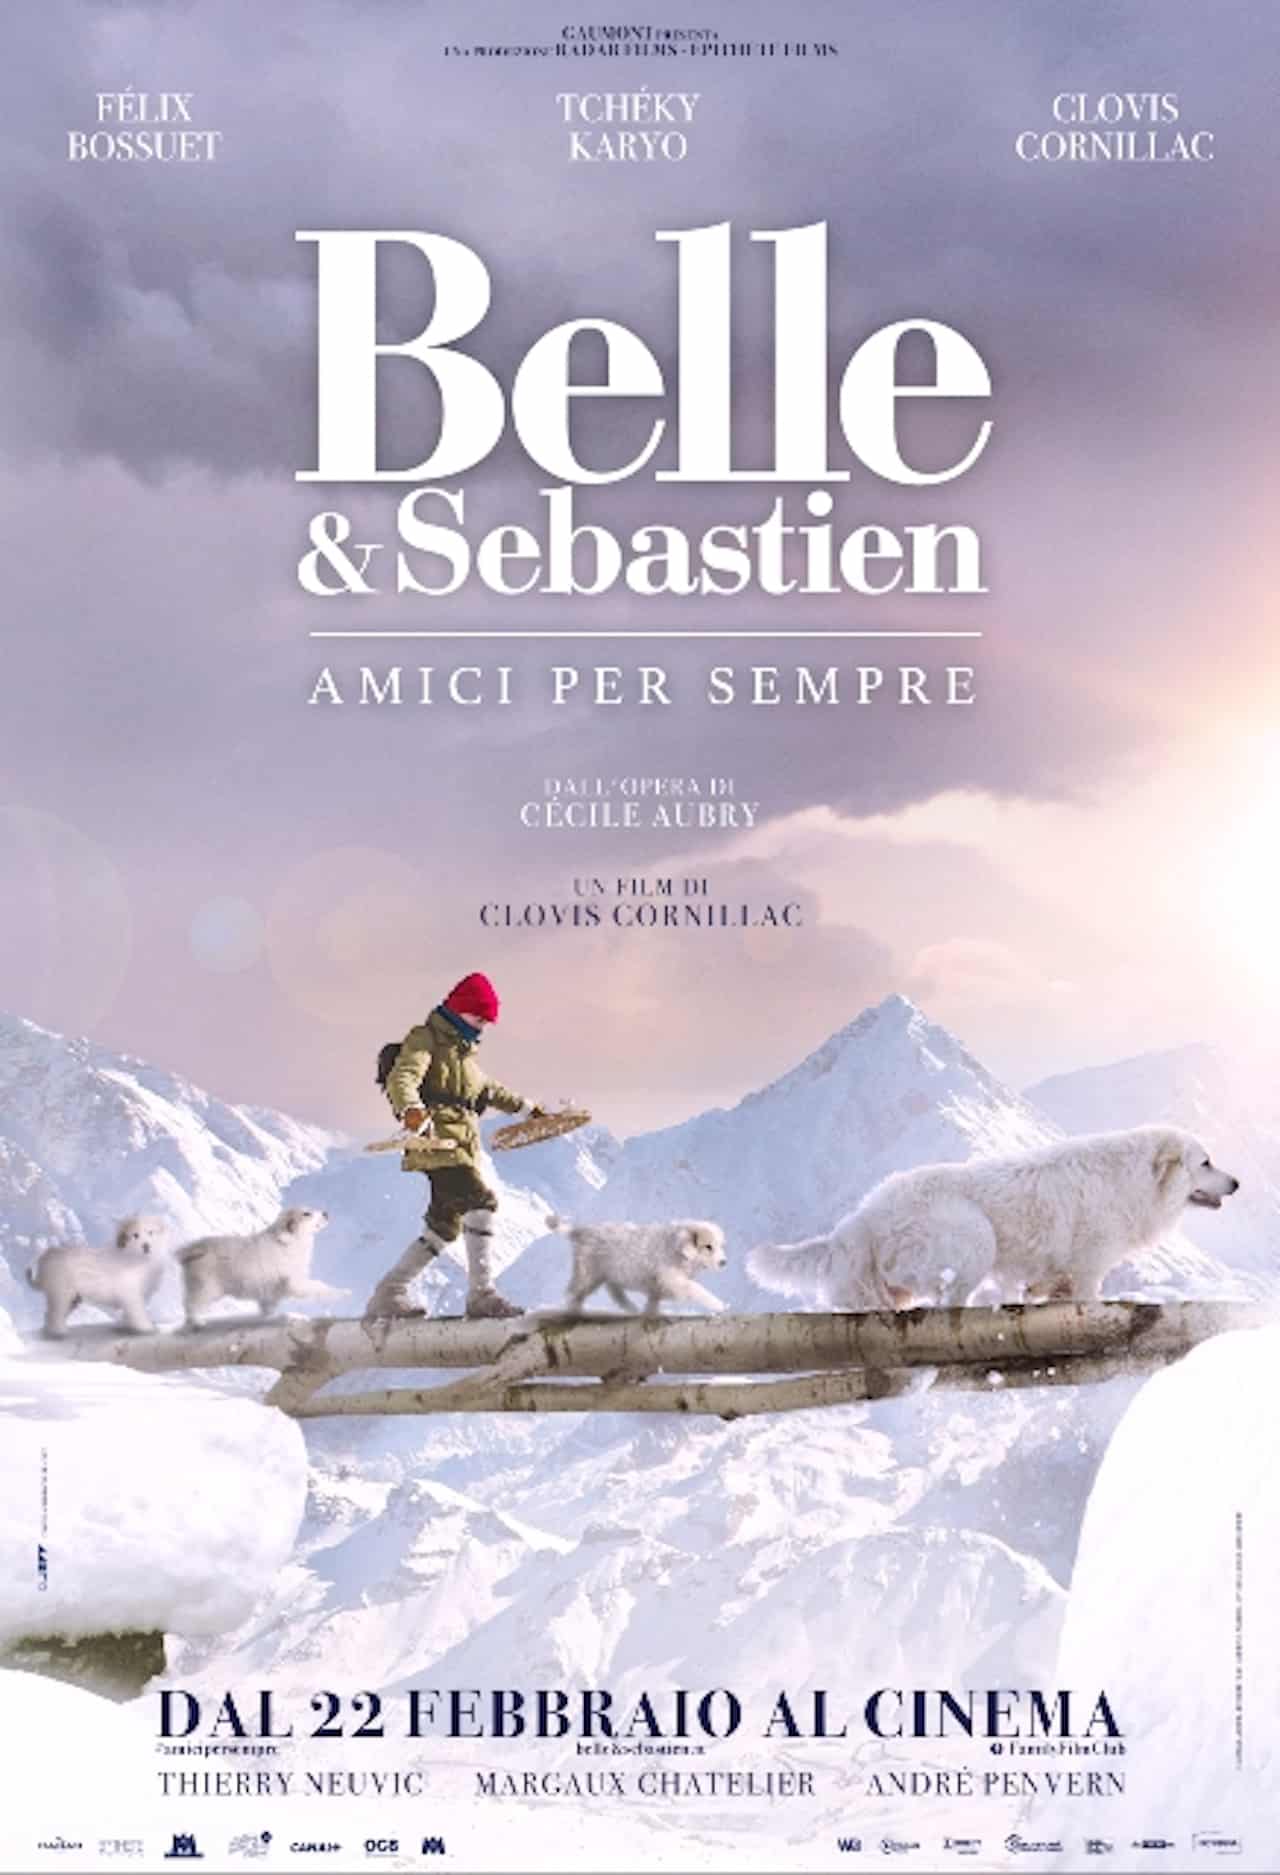 Belle & Sebastien – Amici per sempre cinematographe